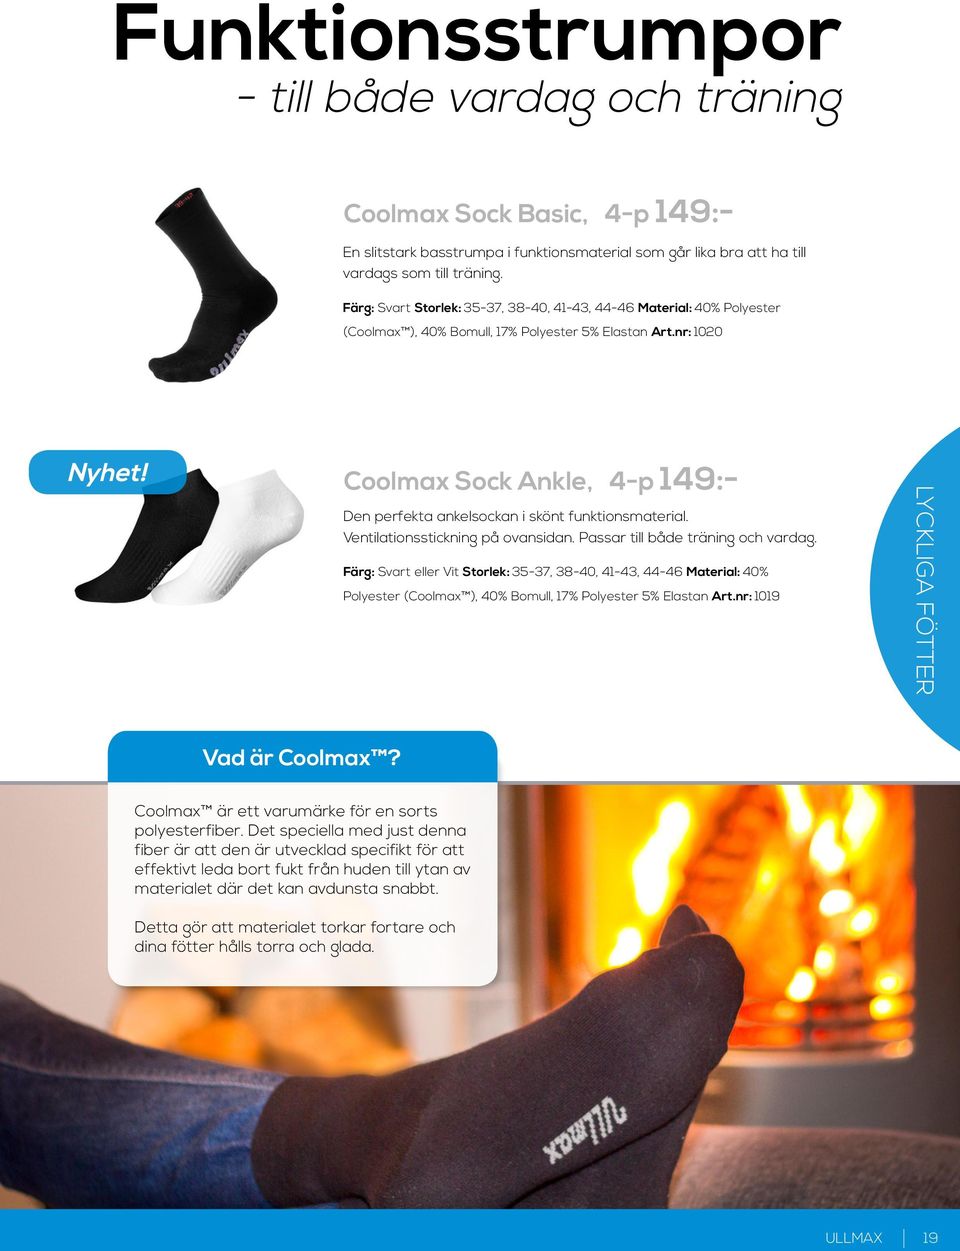 Coolmax Sock Ankle, 4-p 149:- Den perfekta ankelsockan i skönt funktionsmaterial. Ventilationsstickning på ovansidan. Passar till både träning och vardag.